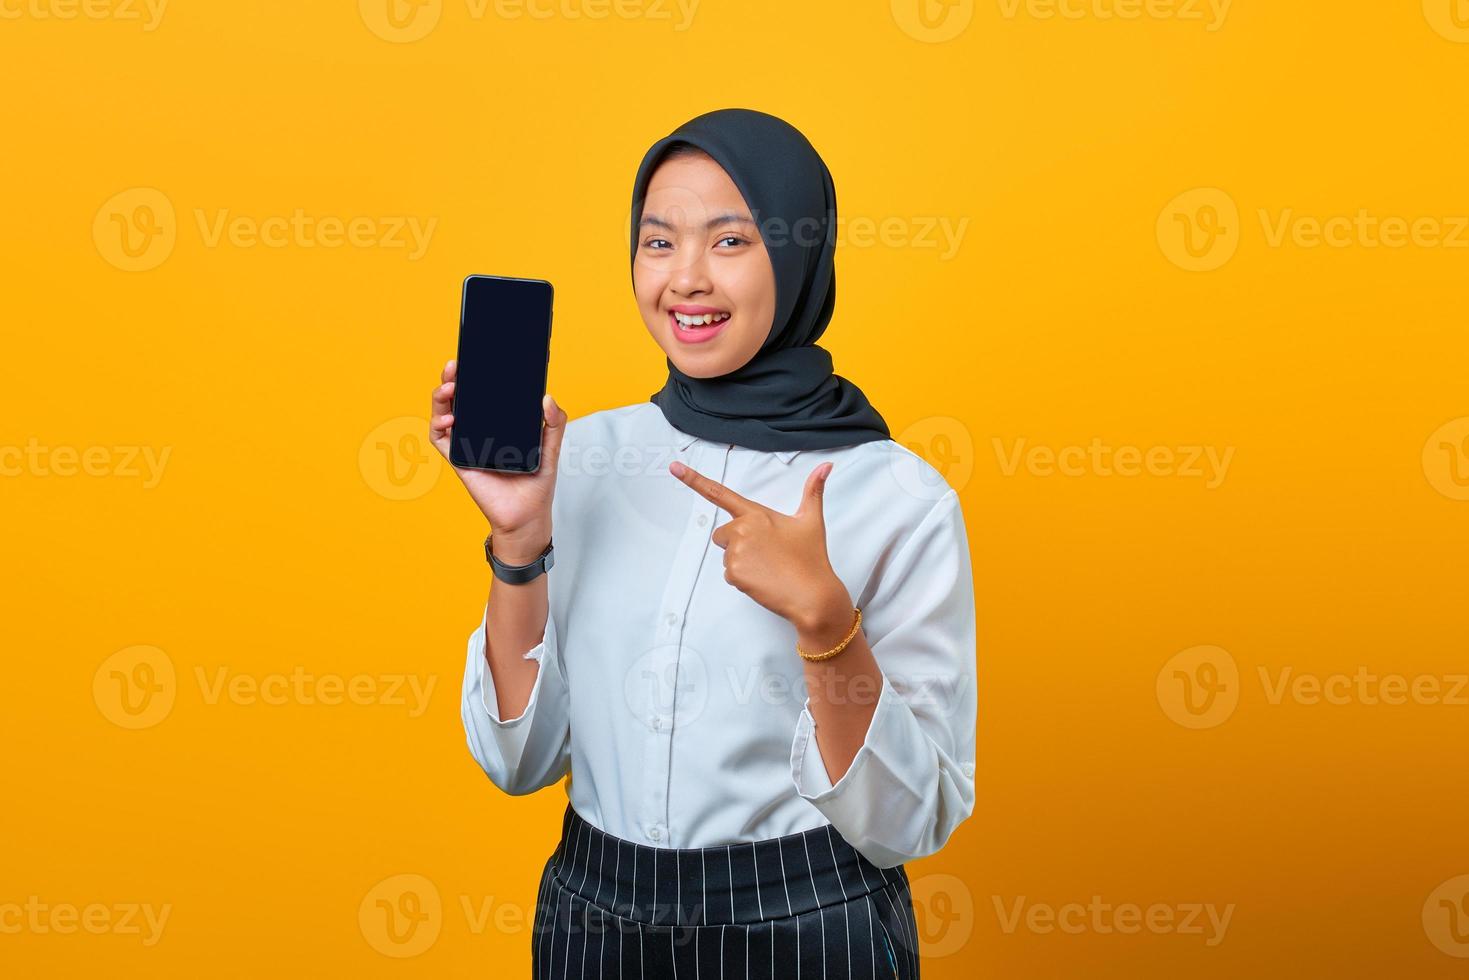 portret van vrolijke jonge aziatische vrouw die het lege scherm van de smartphone op gele achtergrond toont foto